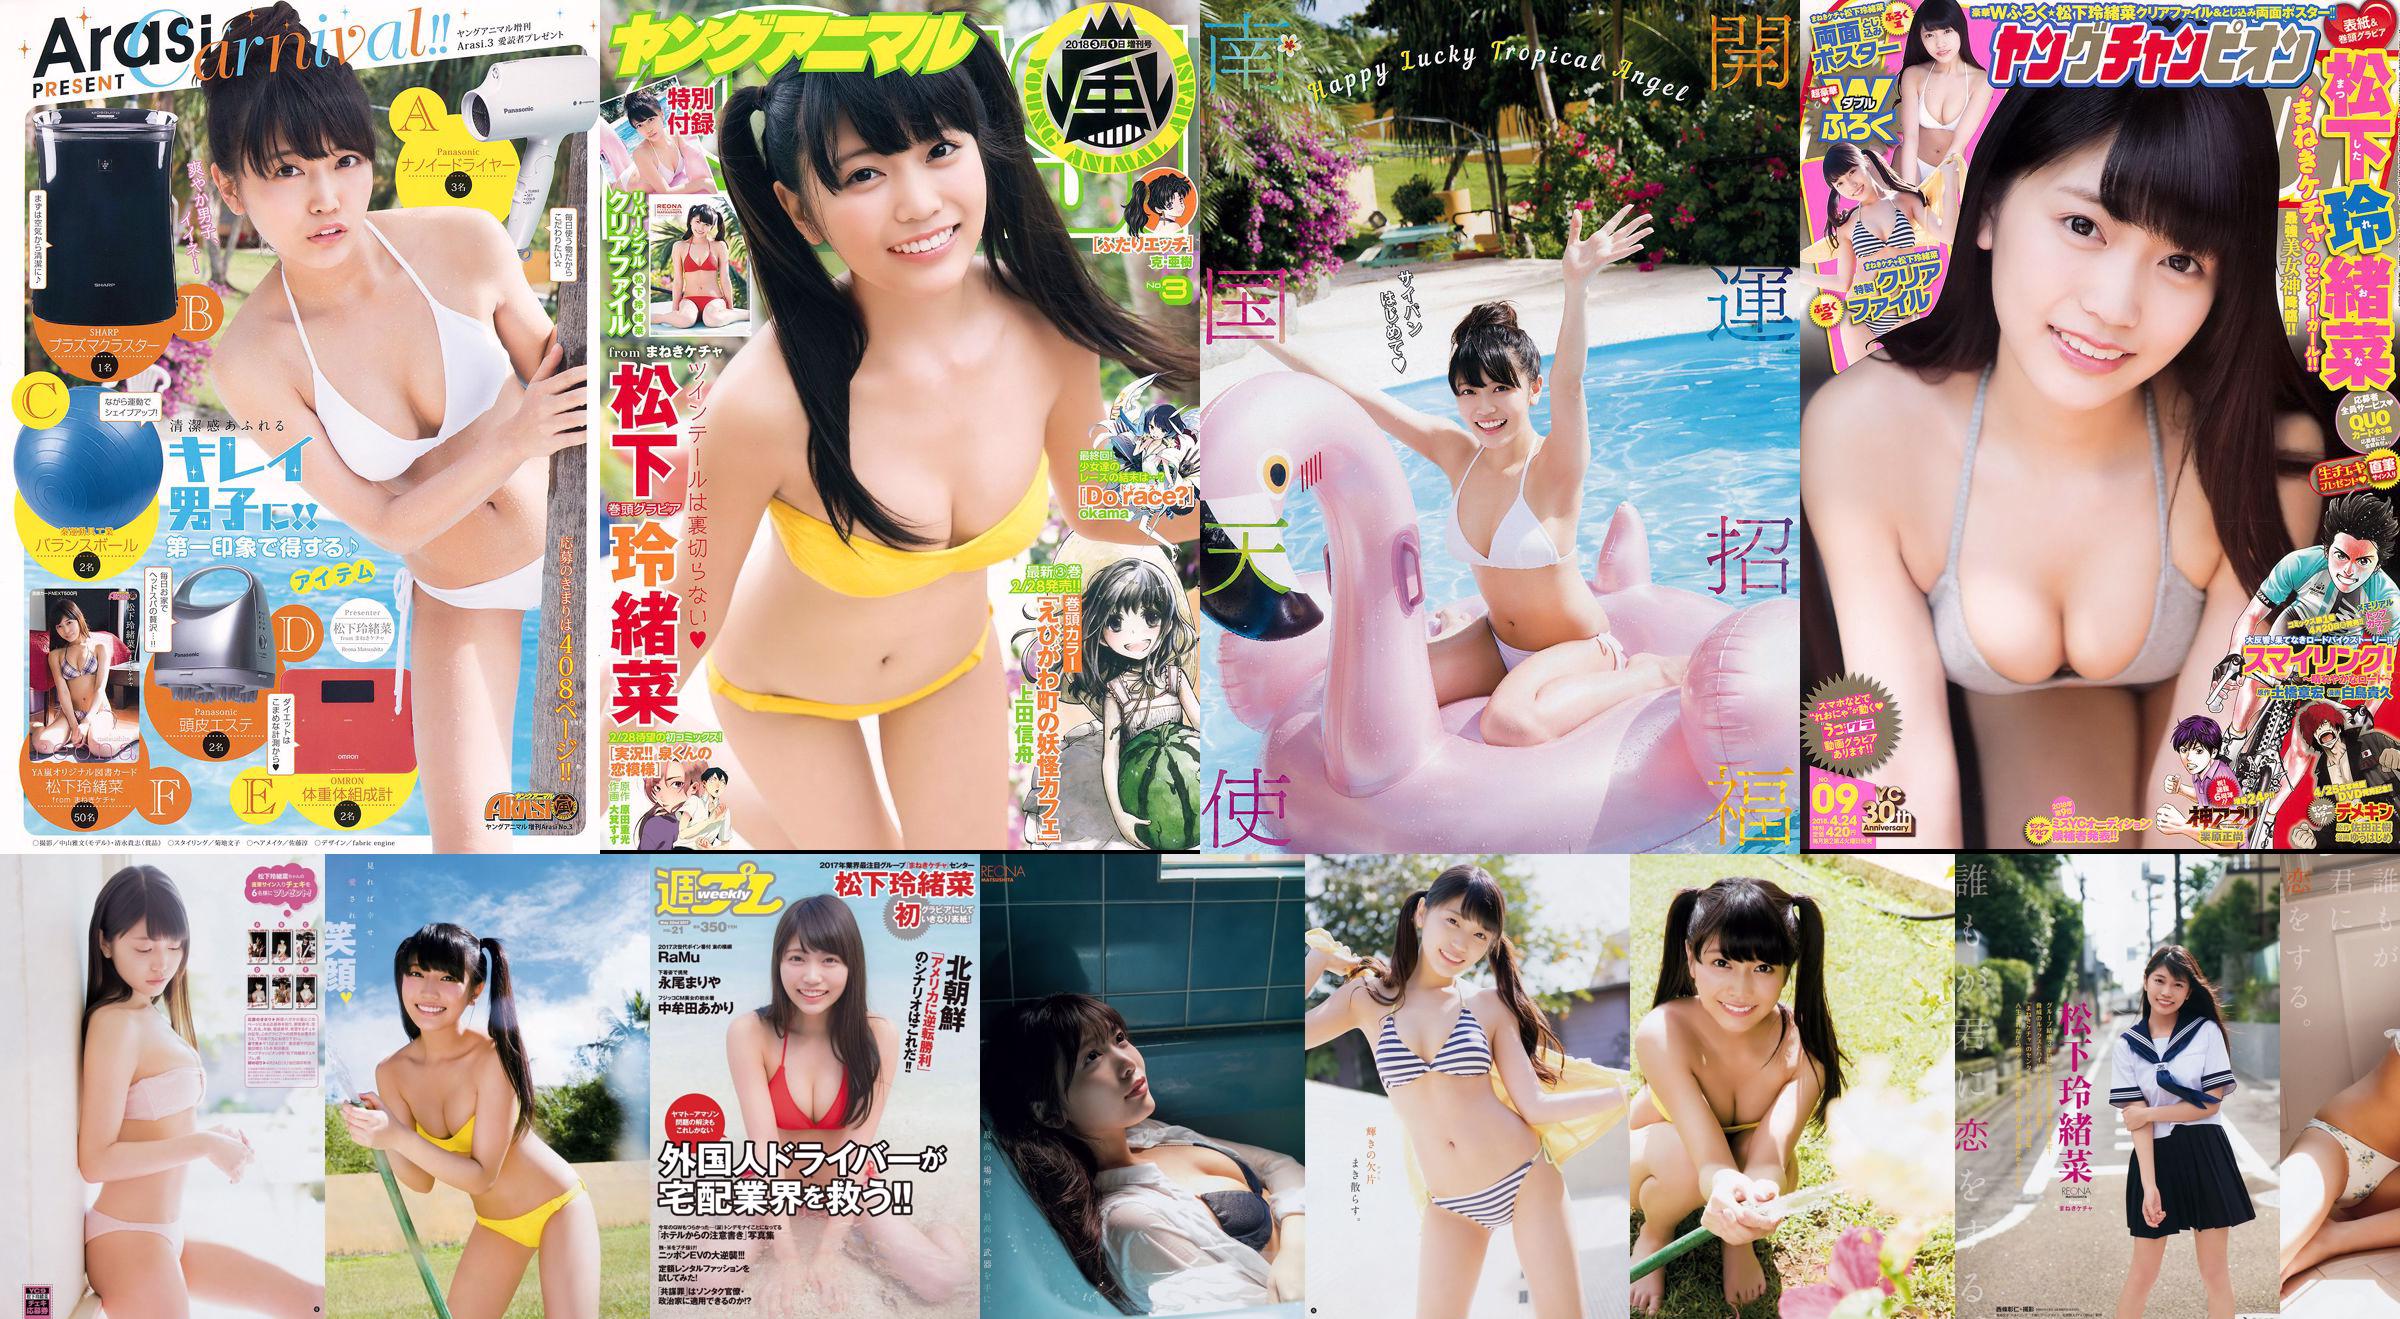 Reona Matsushita RaMu Akari Takamuta Mariya Nagao Suzuka Akimoto Michiko Tanaka Hazuki Nishioka [Wöchentlicher Playboy] 2017 Nr. 21 Foto No.f14a15 Seite 6